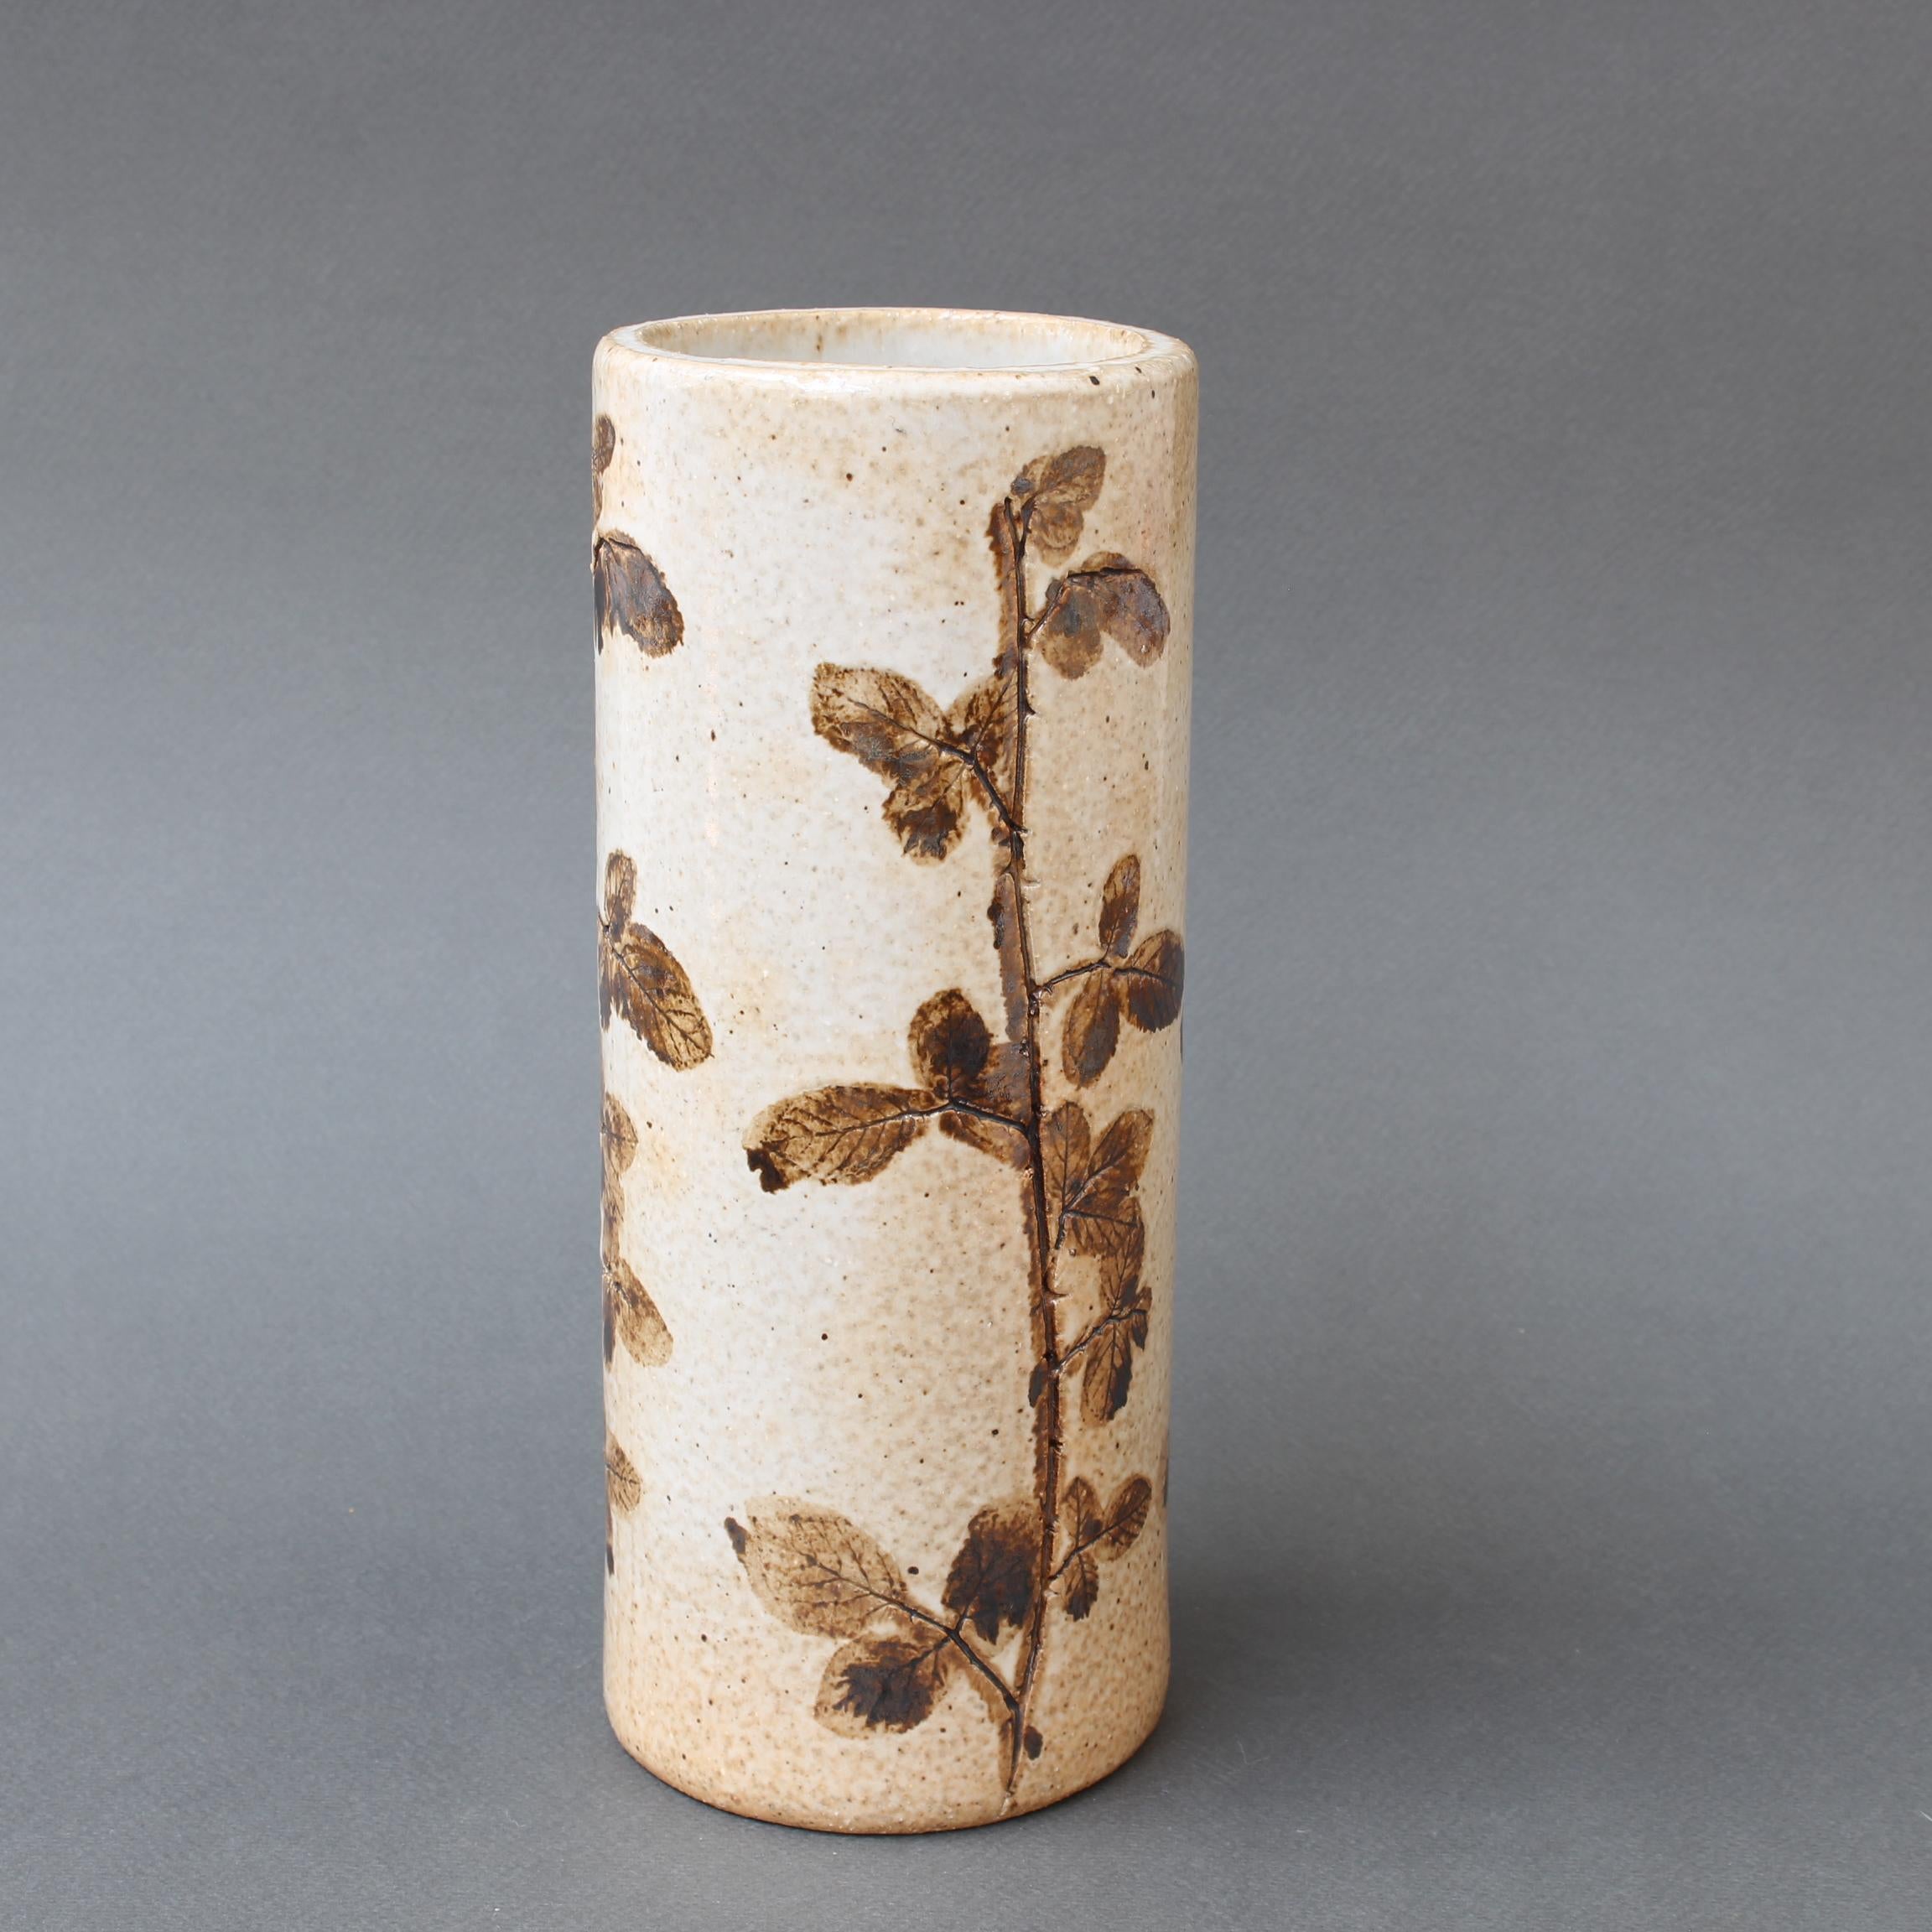 Vase vintage en céramique de Raymonde Leduc (circa 1970). Vase cylindrique en grès avec des motifs végétaux incrustés autour de la pièce. Très charmant dans un style provençal. En bon état général. Dans le style de Roger Capron. Veuillez apprécier